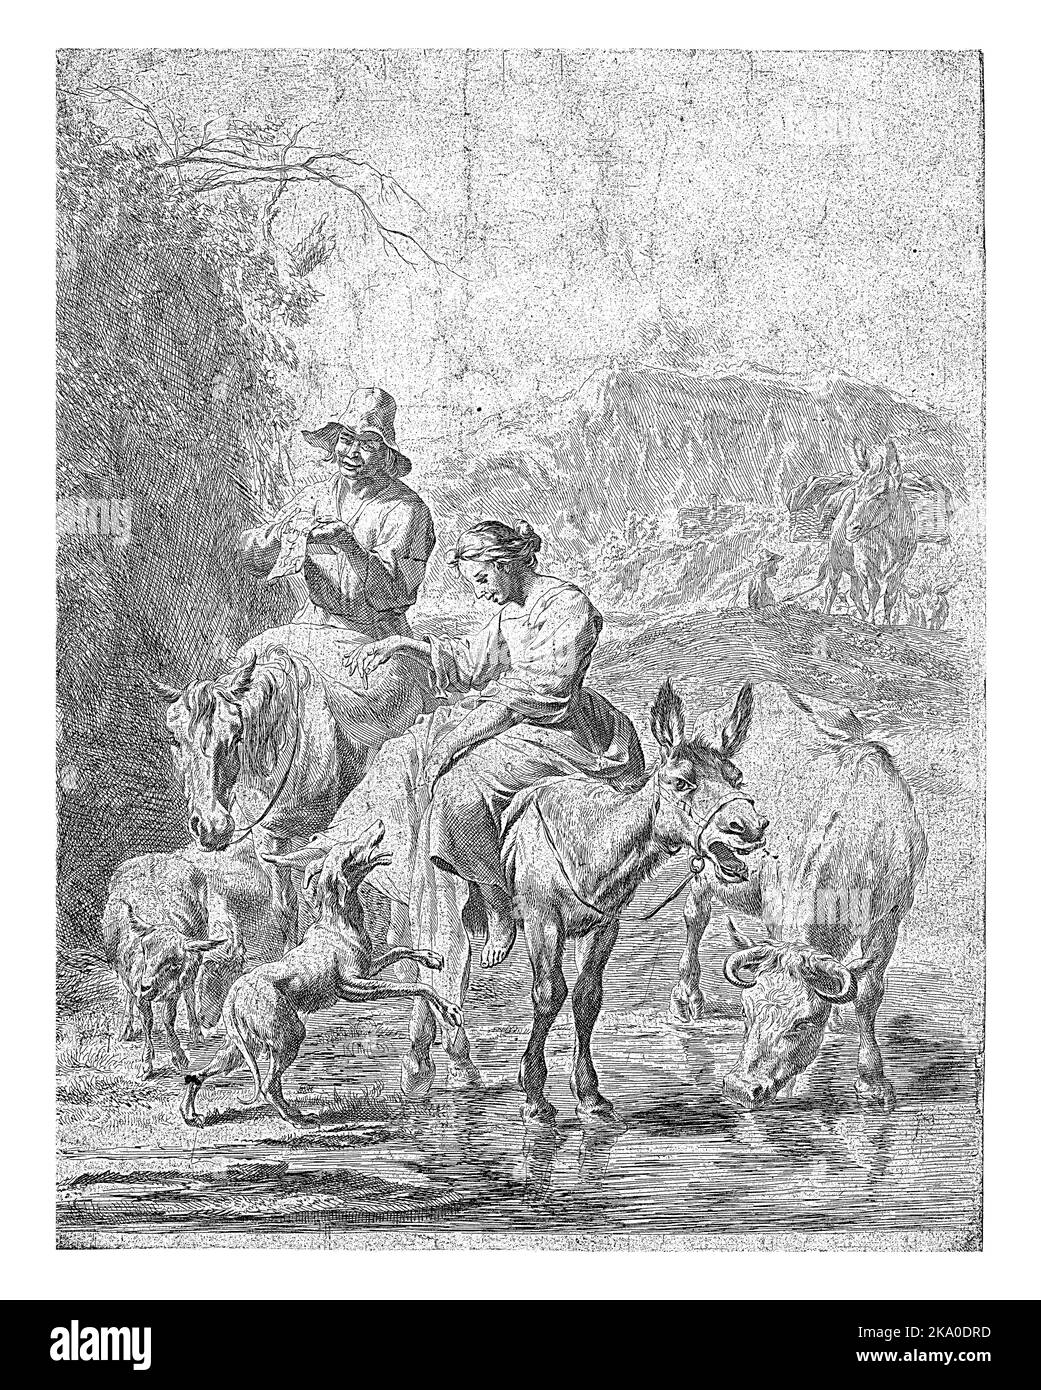 Bergers sur Donkey et Shepherd sur Horse Crossing a Stream, Nicolaes Pietersz. Berchem, 1652 - 1666, gravé d'époque. Banque D'Images